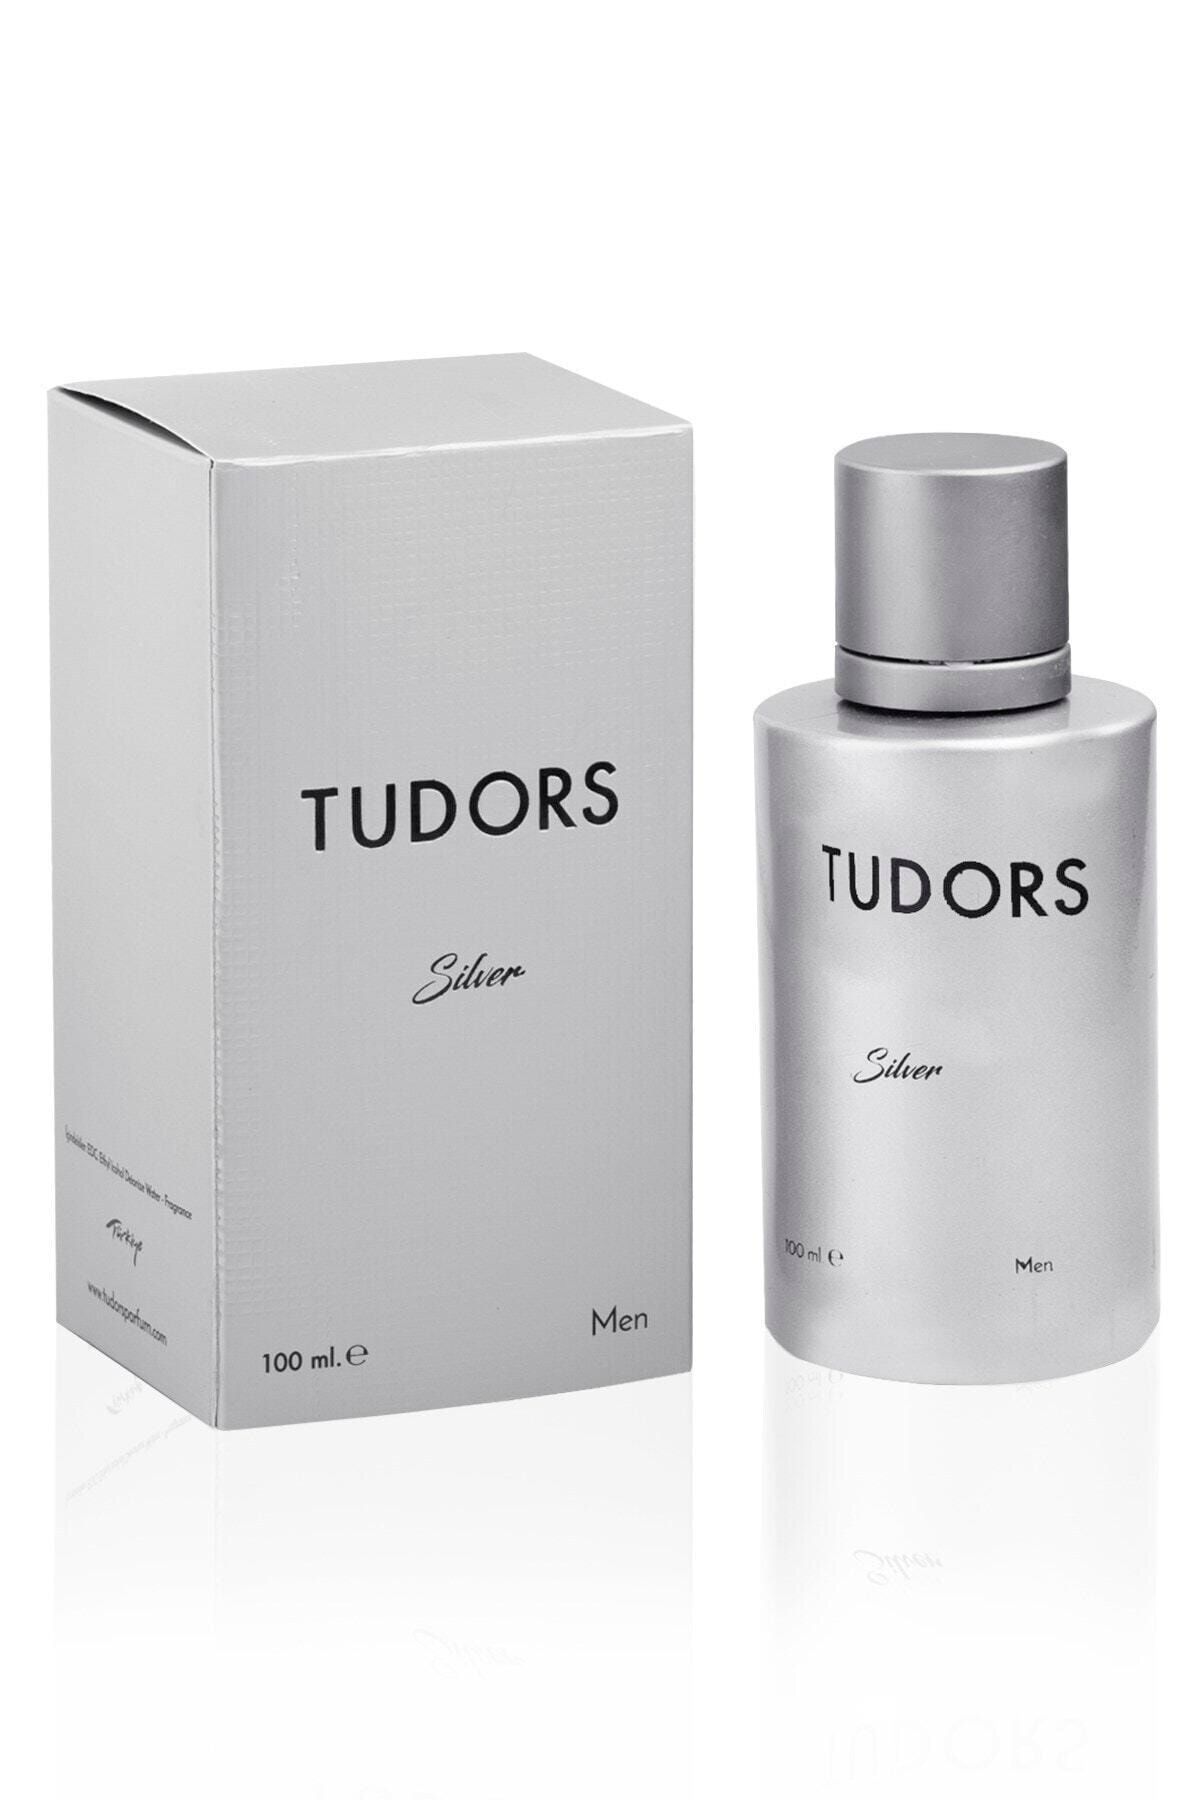 Tudors Silver Erkek Parfüm 100 ml Tdrm002